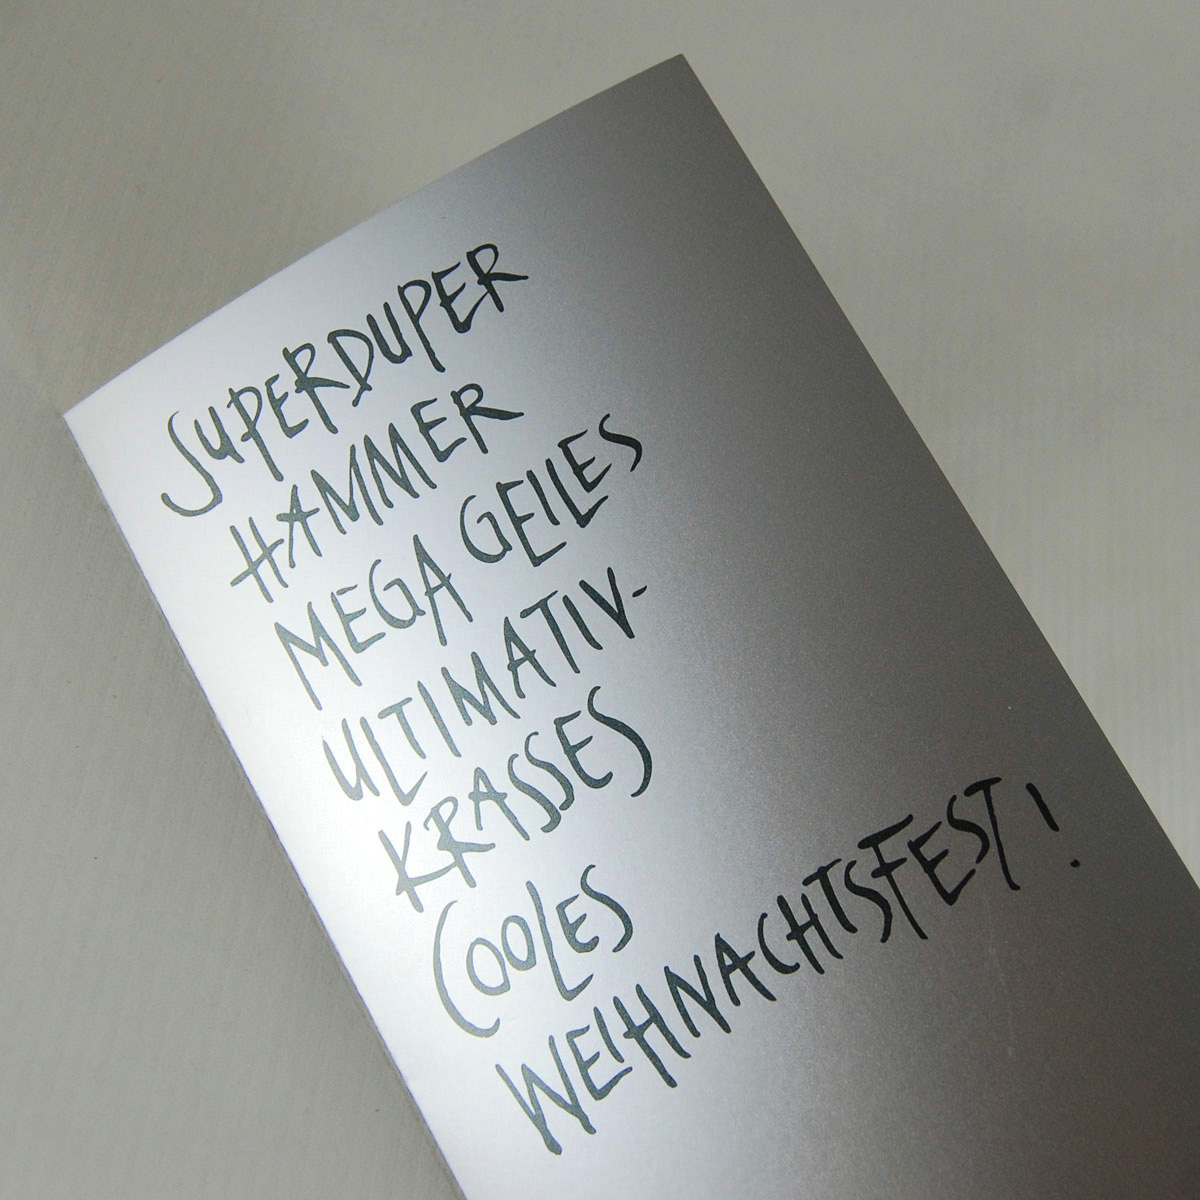 Superduper Hammer mega geiles ultimativ-krasses cooles Weihnachtsfest! (LOL.), Weihnachtskarten mit Text